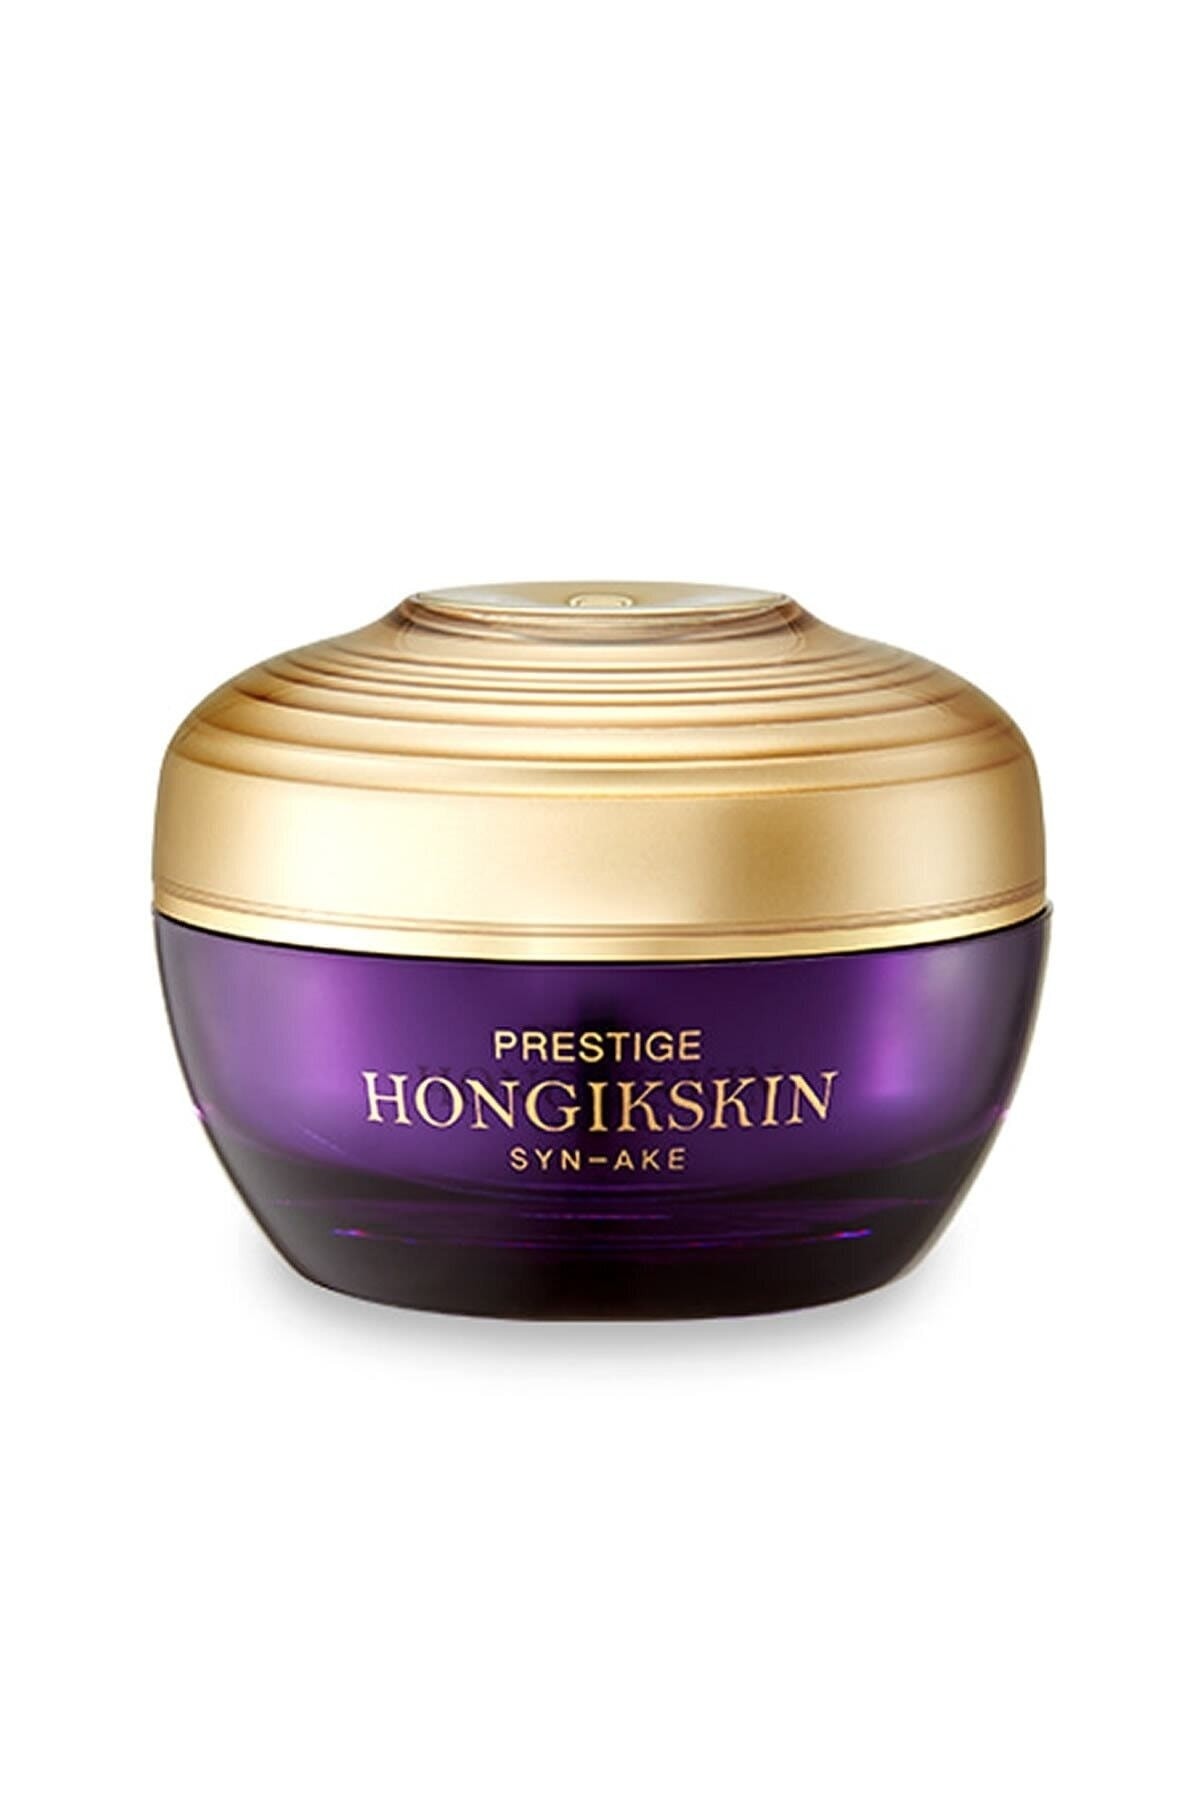 Hongikskin Prestige Syn-ake Memory Cream ( Gözenek, Sıkılaştırıcı, Anti Aging Krem )